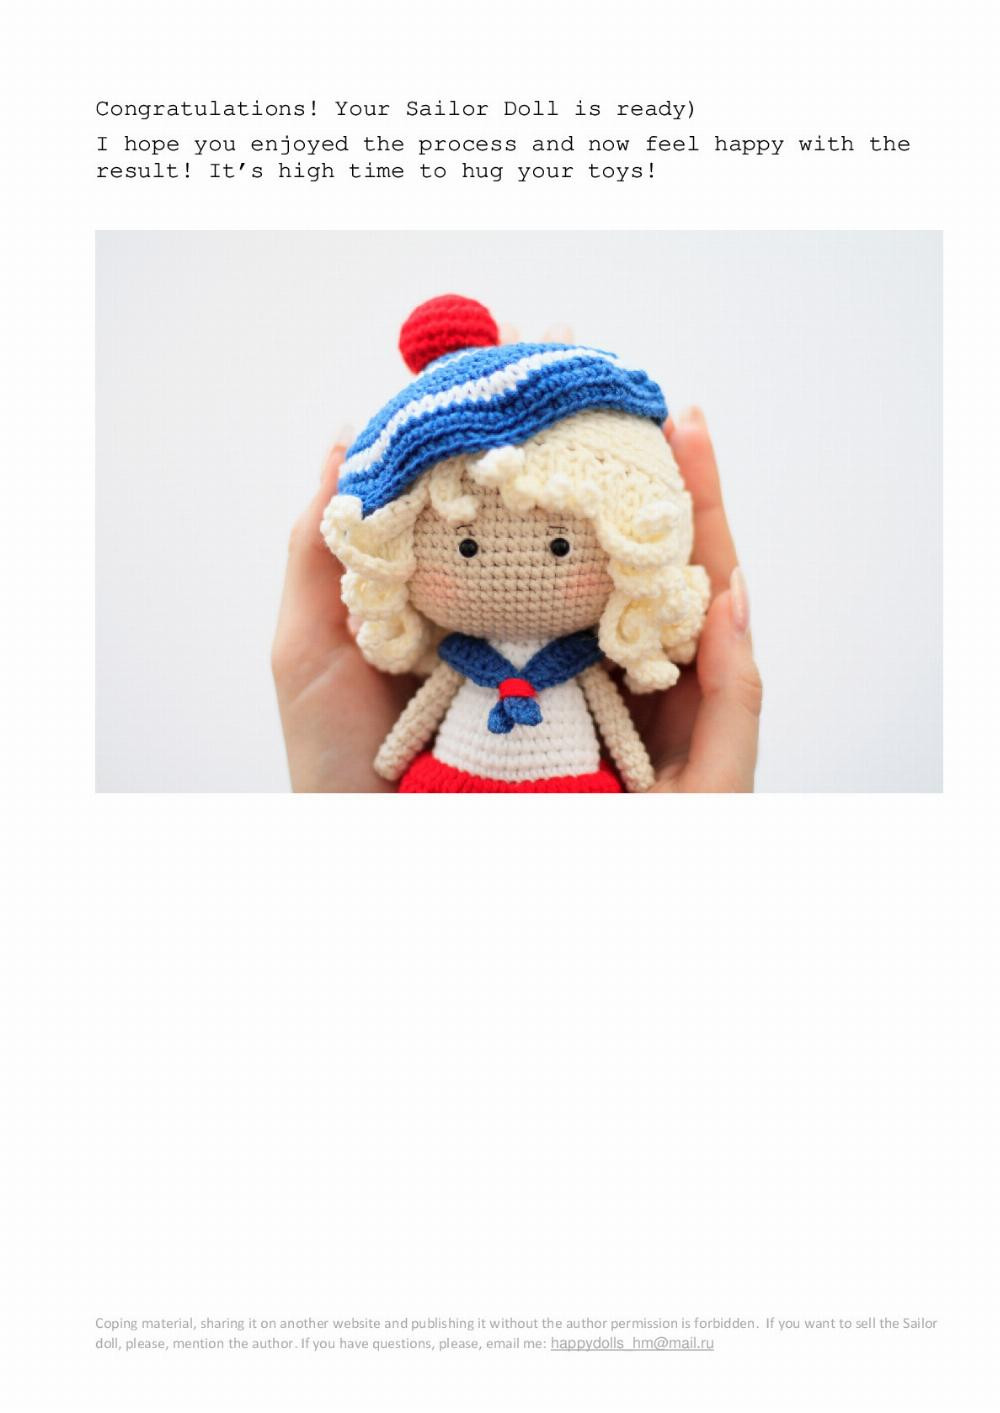 Sailor doll crochet pattern